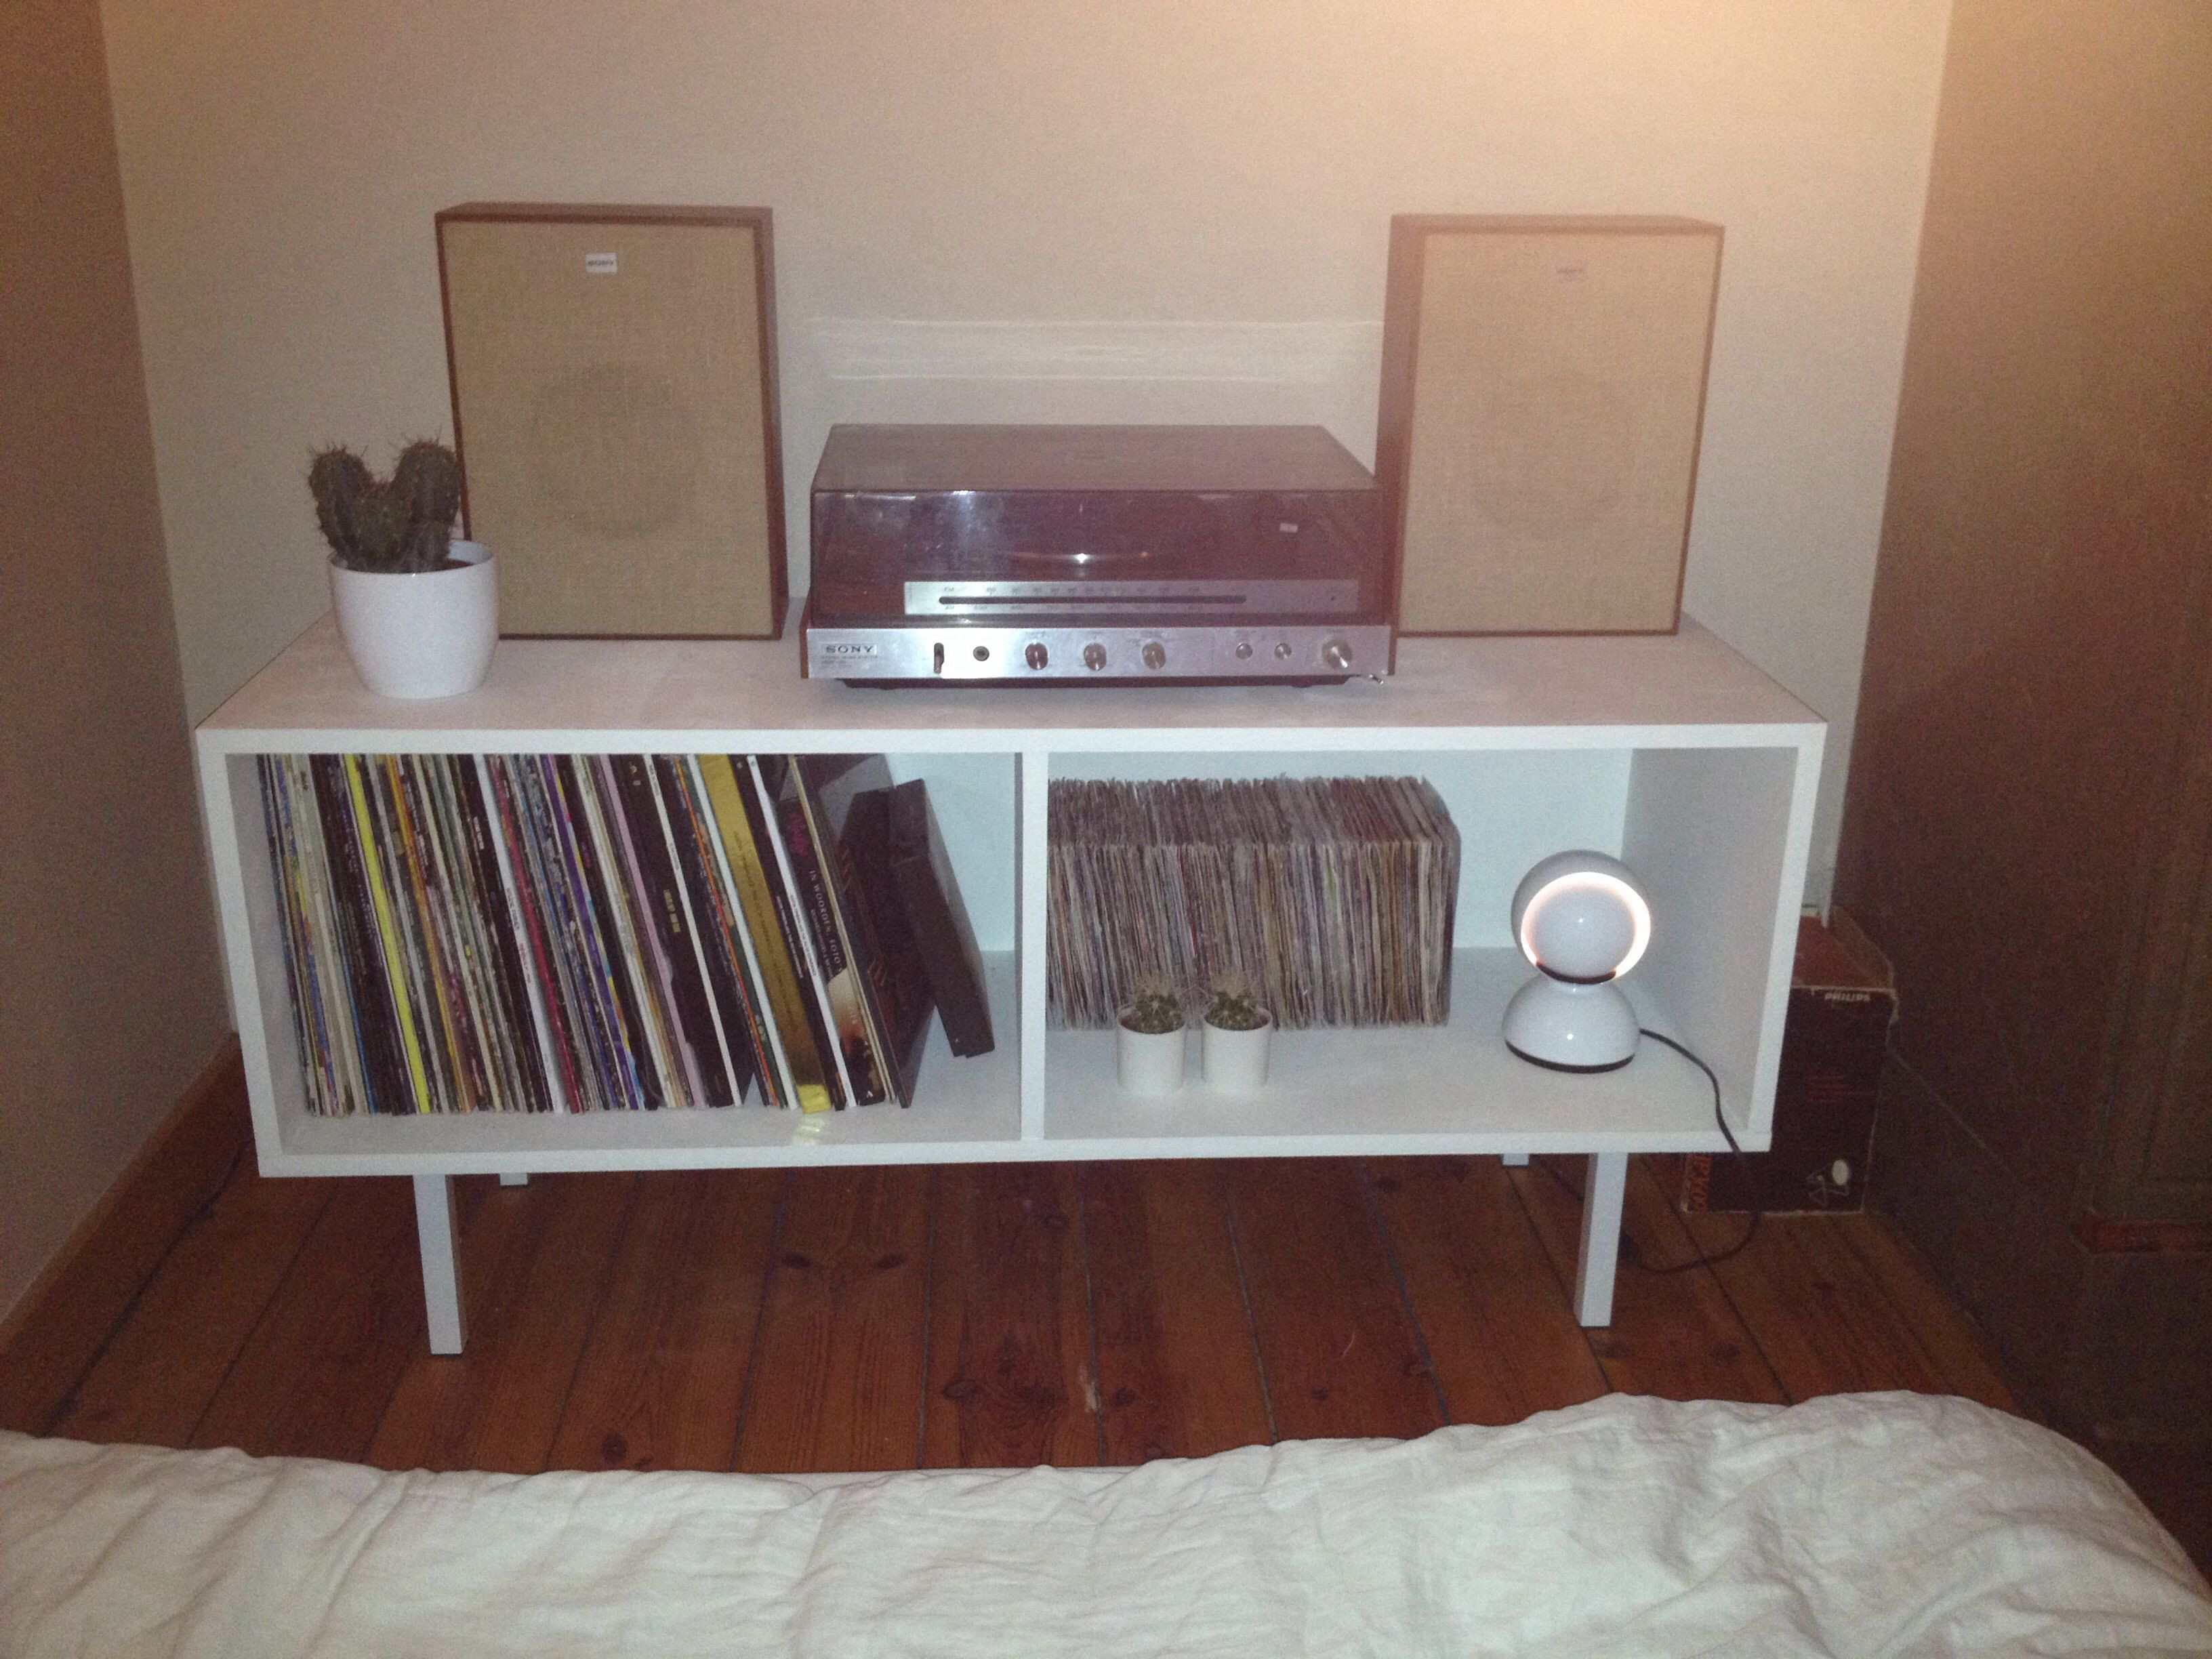 Best ideas about DIY Vinyl Record Storage
. Save or Pin DIY vinyl record storage cupboard DIY Now.